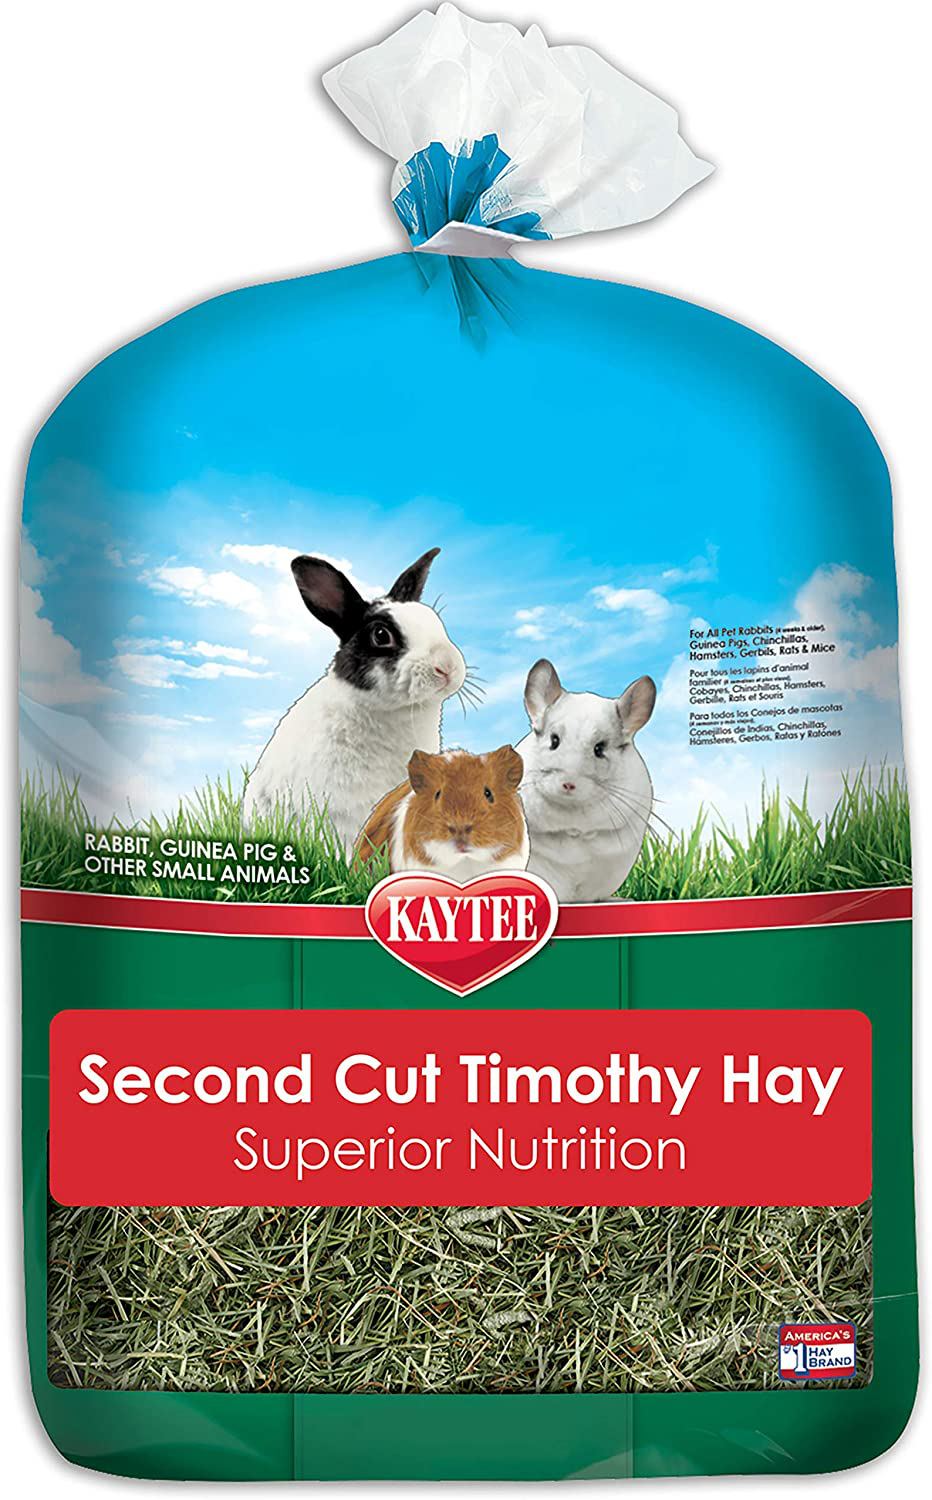 Kaytee Timothy Hay 2Nd Cut, 6.5 Lb